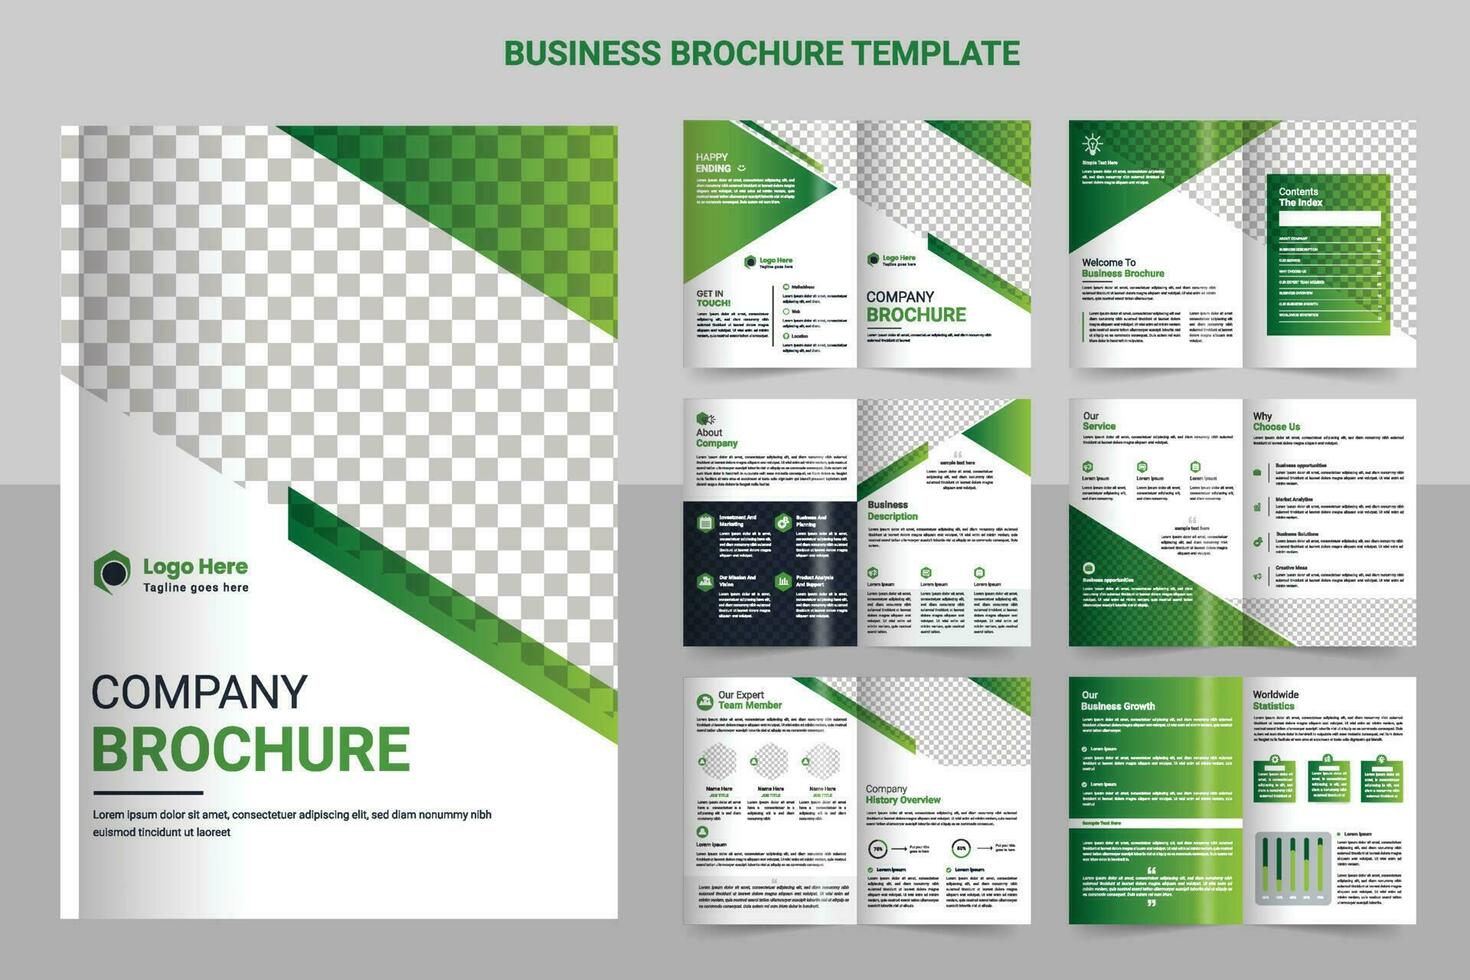 brochure sjabloon lay-out ontwerp en zakelijke minimaal meerdere pagina's brochure sjabloon ontwerp vector